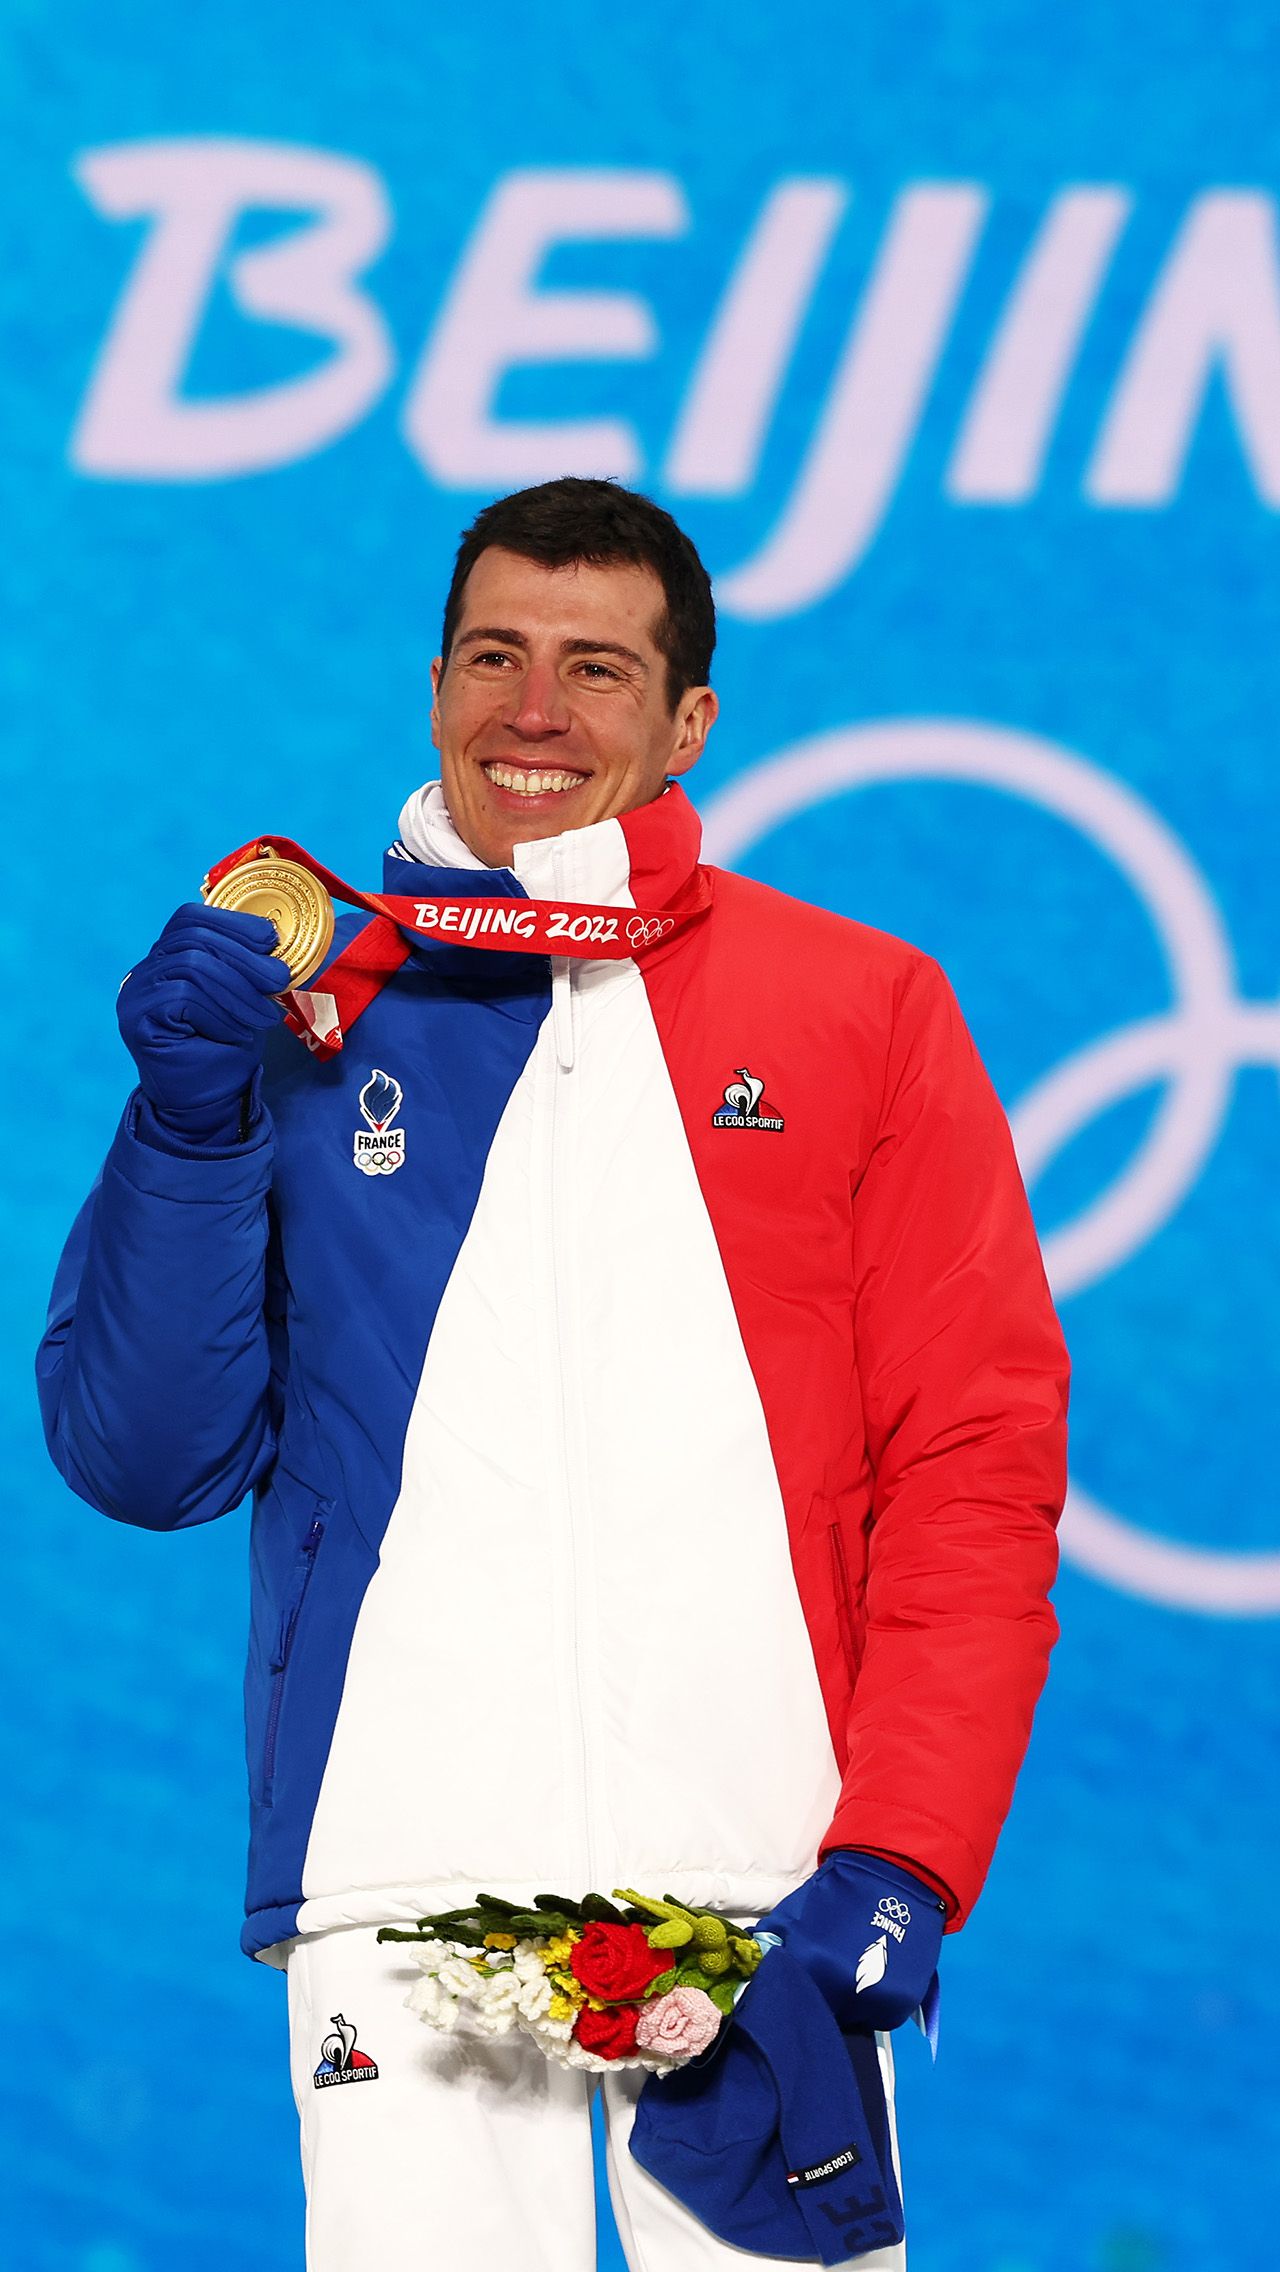 В нынешнем сезоне у Фийона Майе 14 медалей: 8 золотых, 4 серебряных и 2 бронзовых. Также француз стал двукратным олимпийским чемпионом и трёхкратным серебряным призёром Игр. 